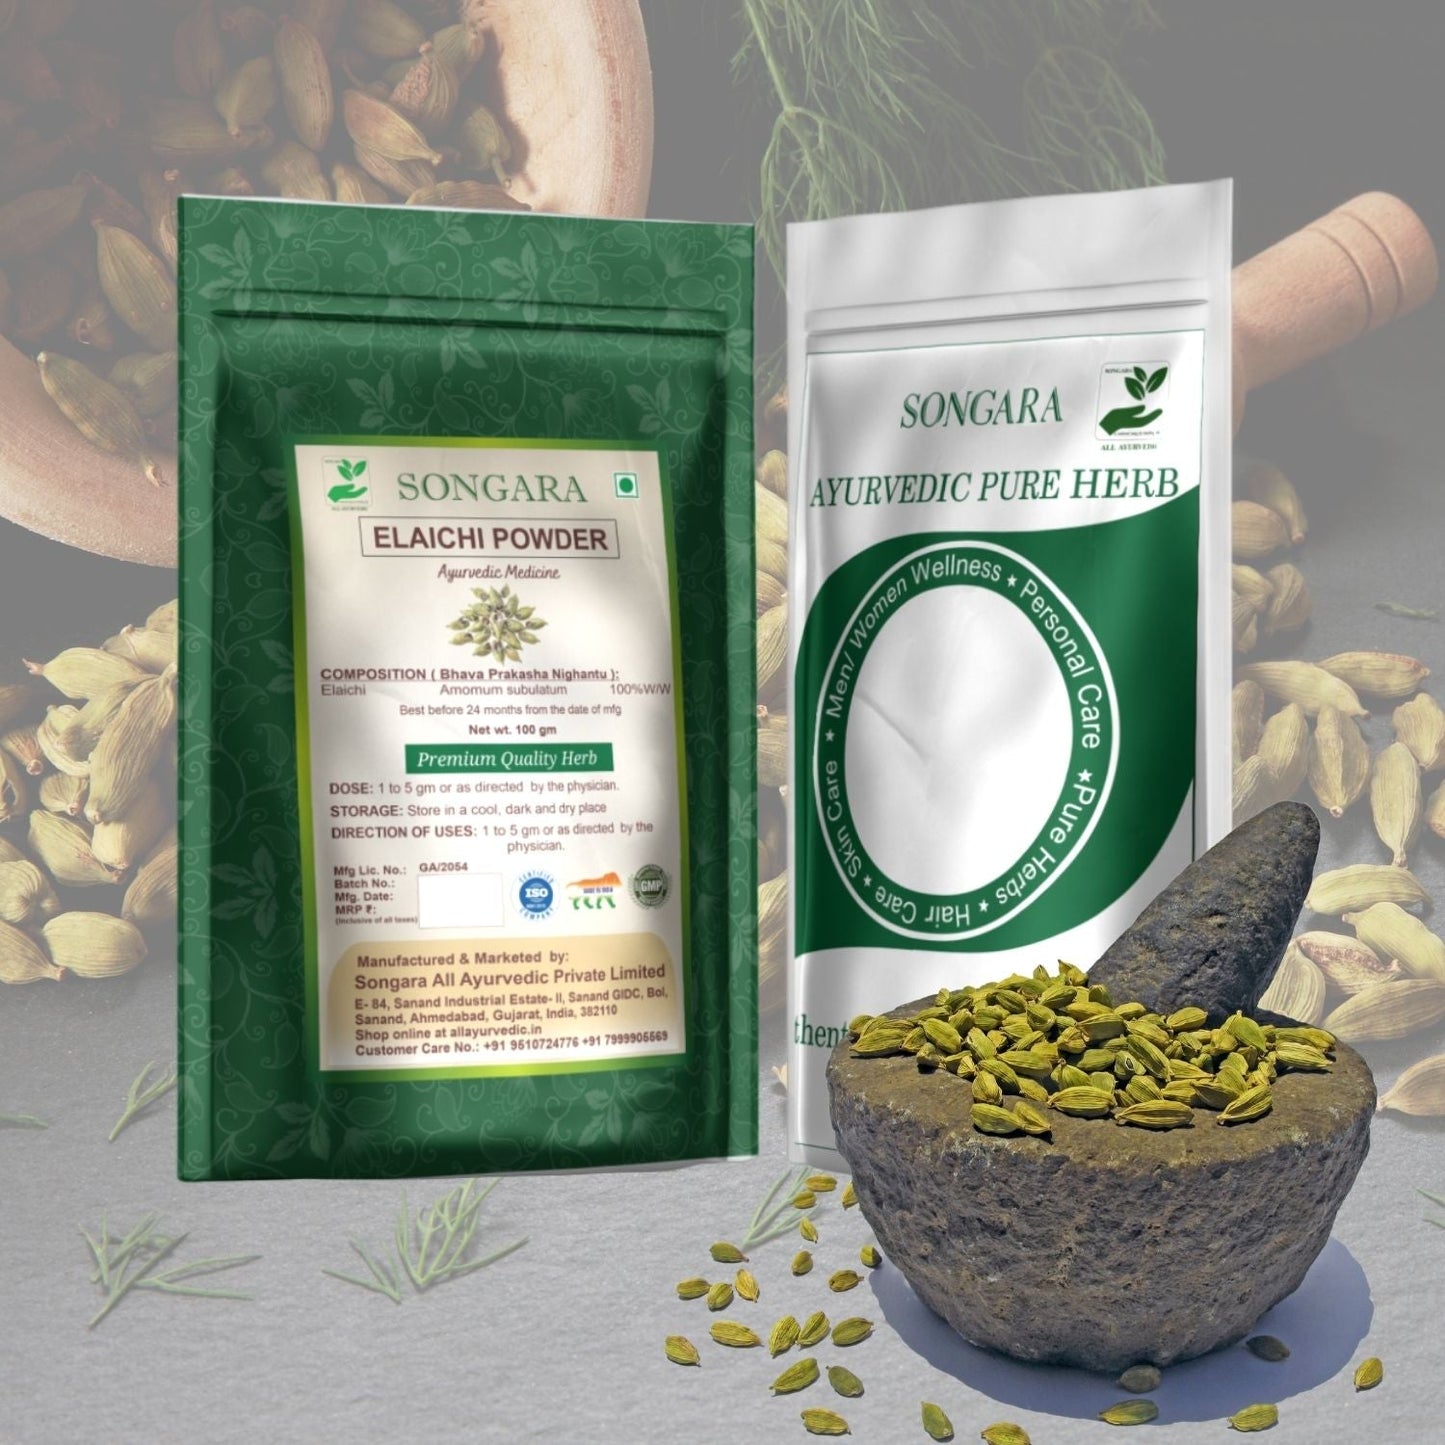 Songara Ilaichi Powder: (Amomum subulatum) Premium Ilaichi Powder | Pure and Authentic | Convenient and Versatile | Exceptional Flavor | Ayurvedic | Health Benefits